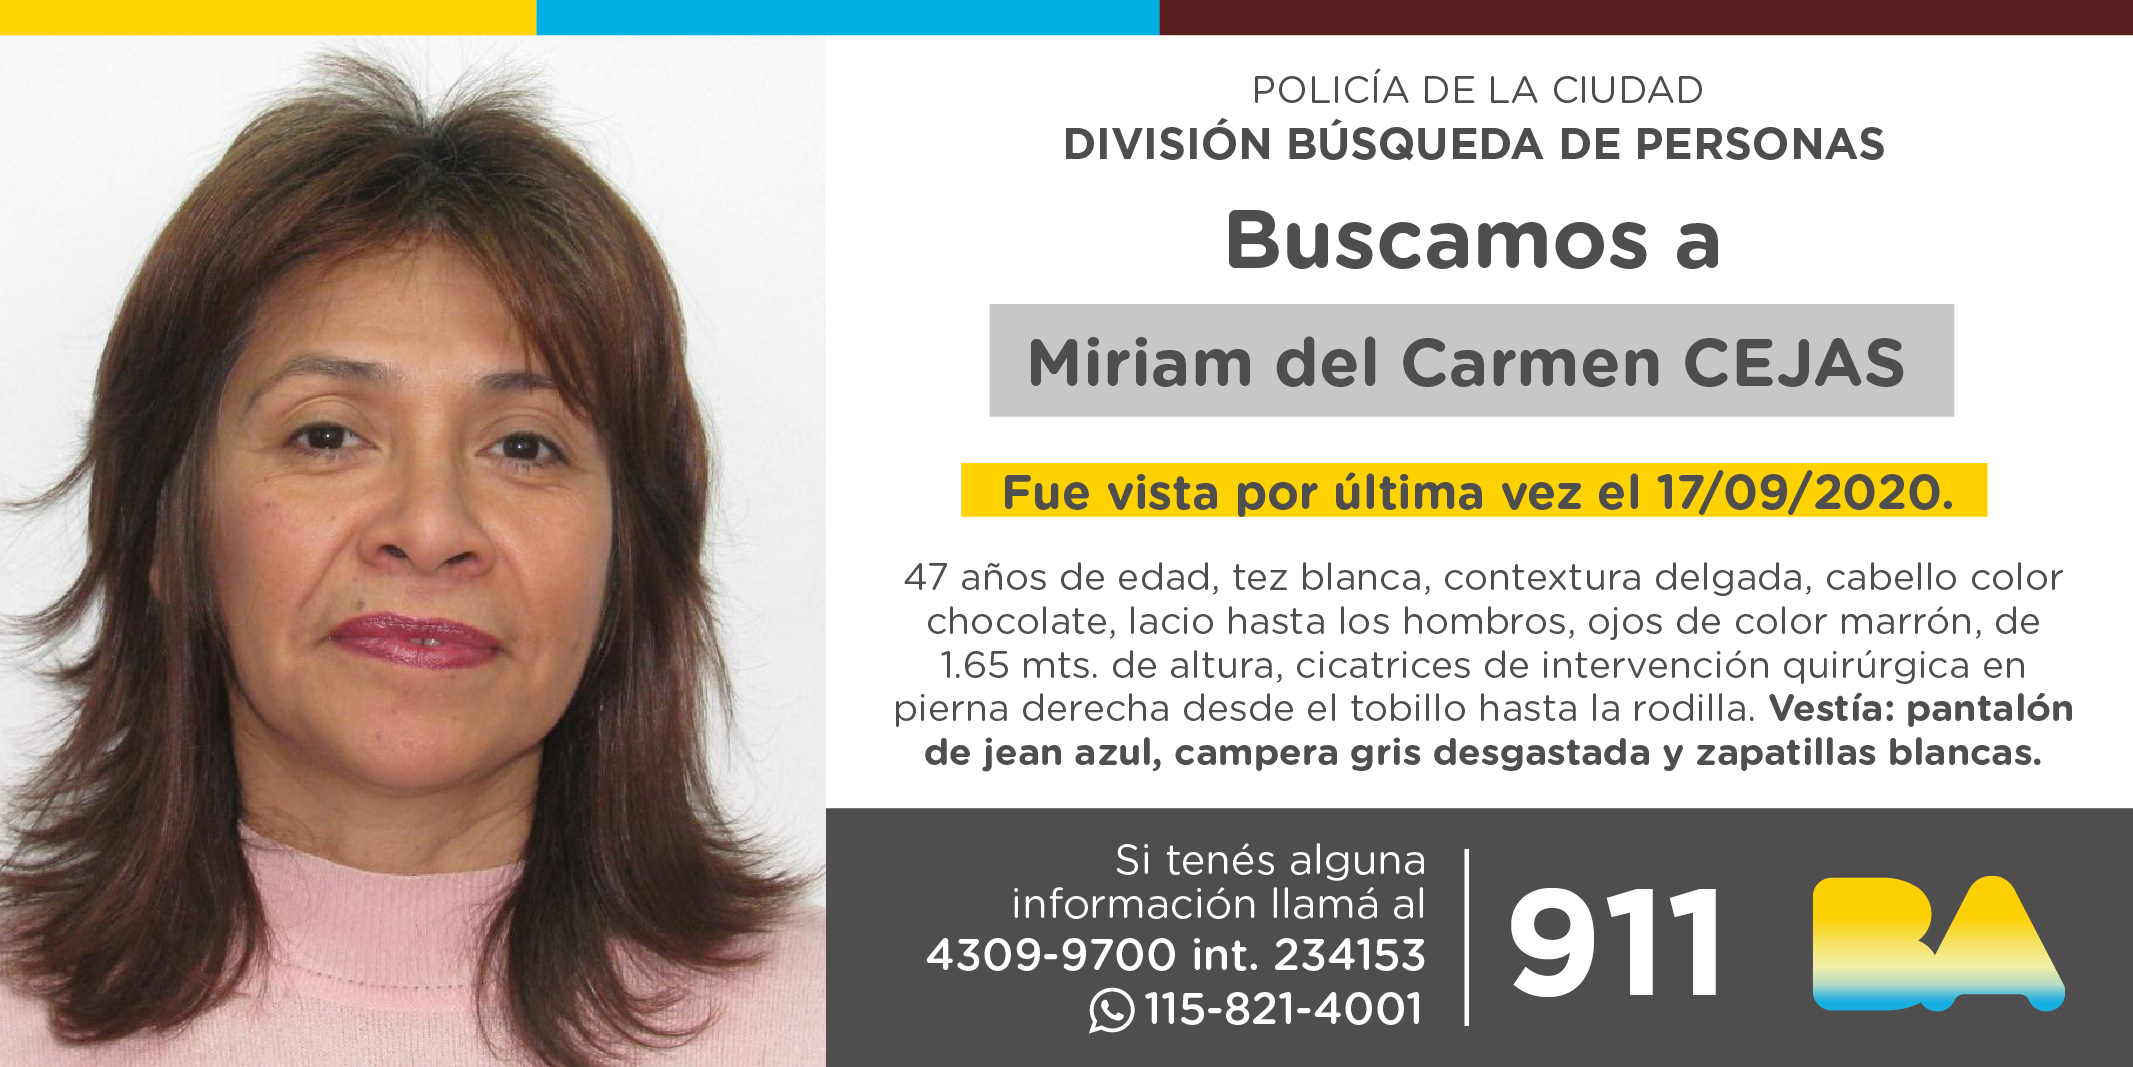 La Policía solicita colaboración en la búsqueda de Miriam del Carmen Cejas